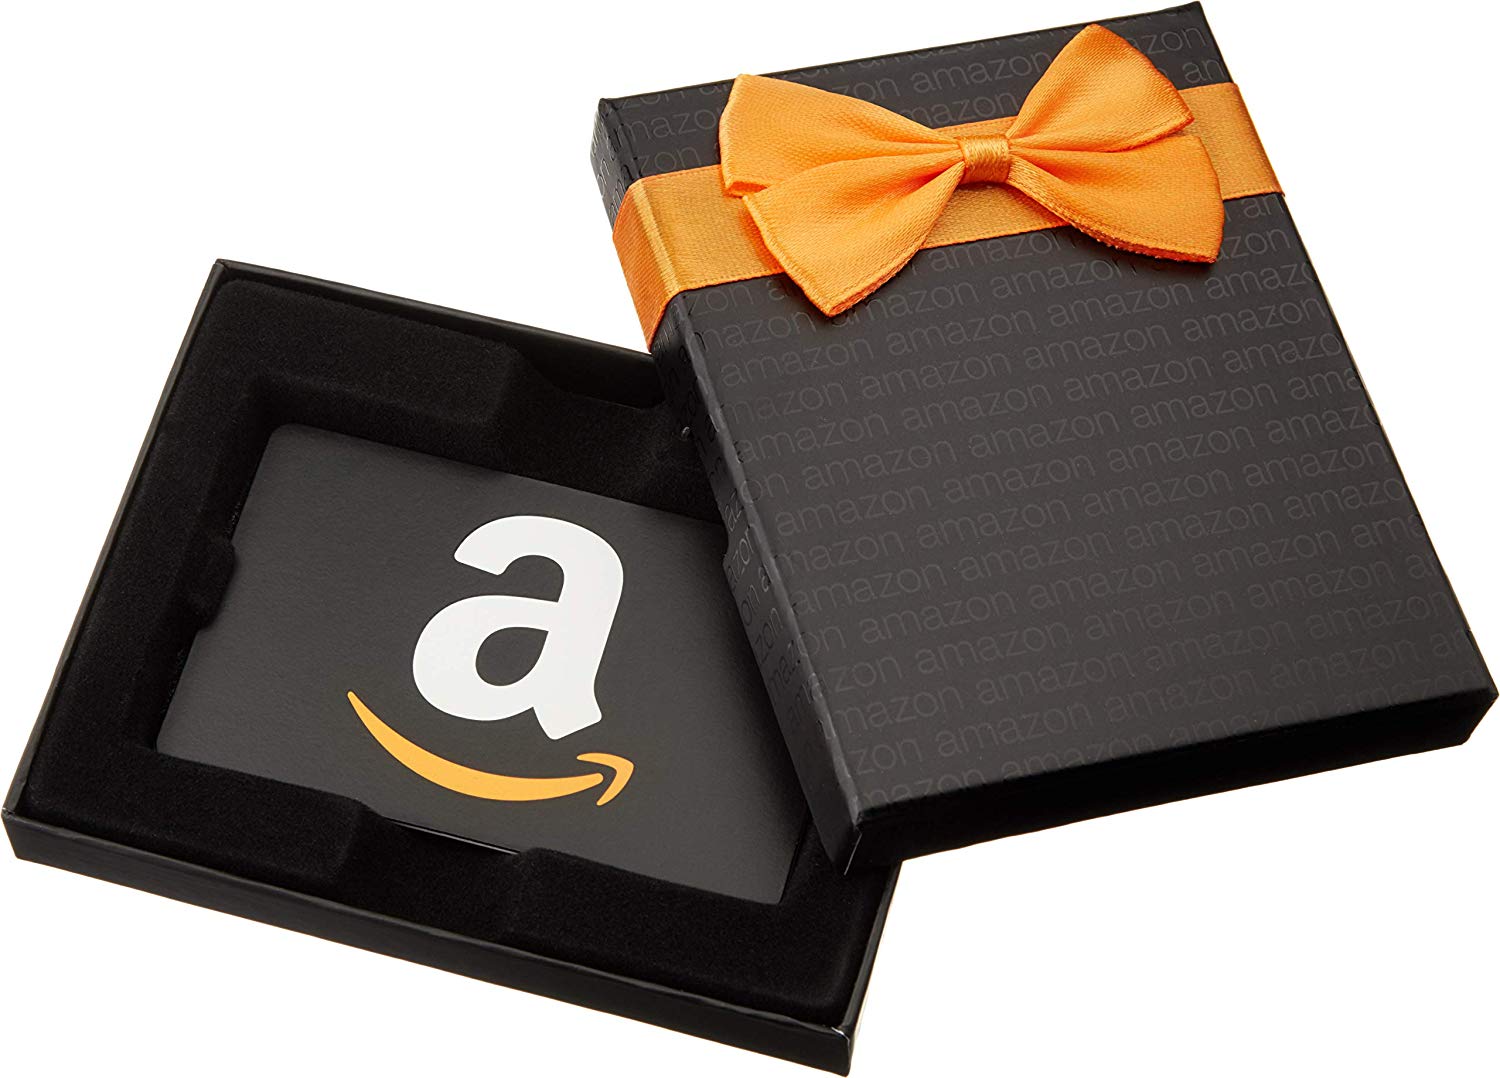 Amazon gift card là gì? Amazon gift card dùng để làm gì?